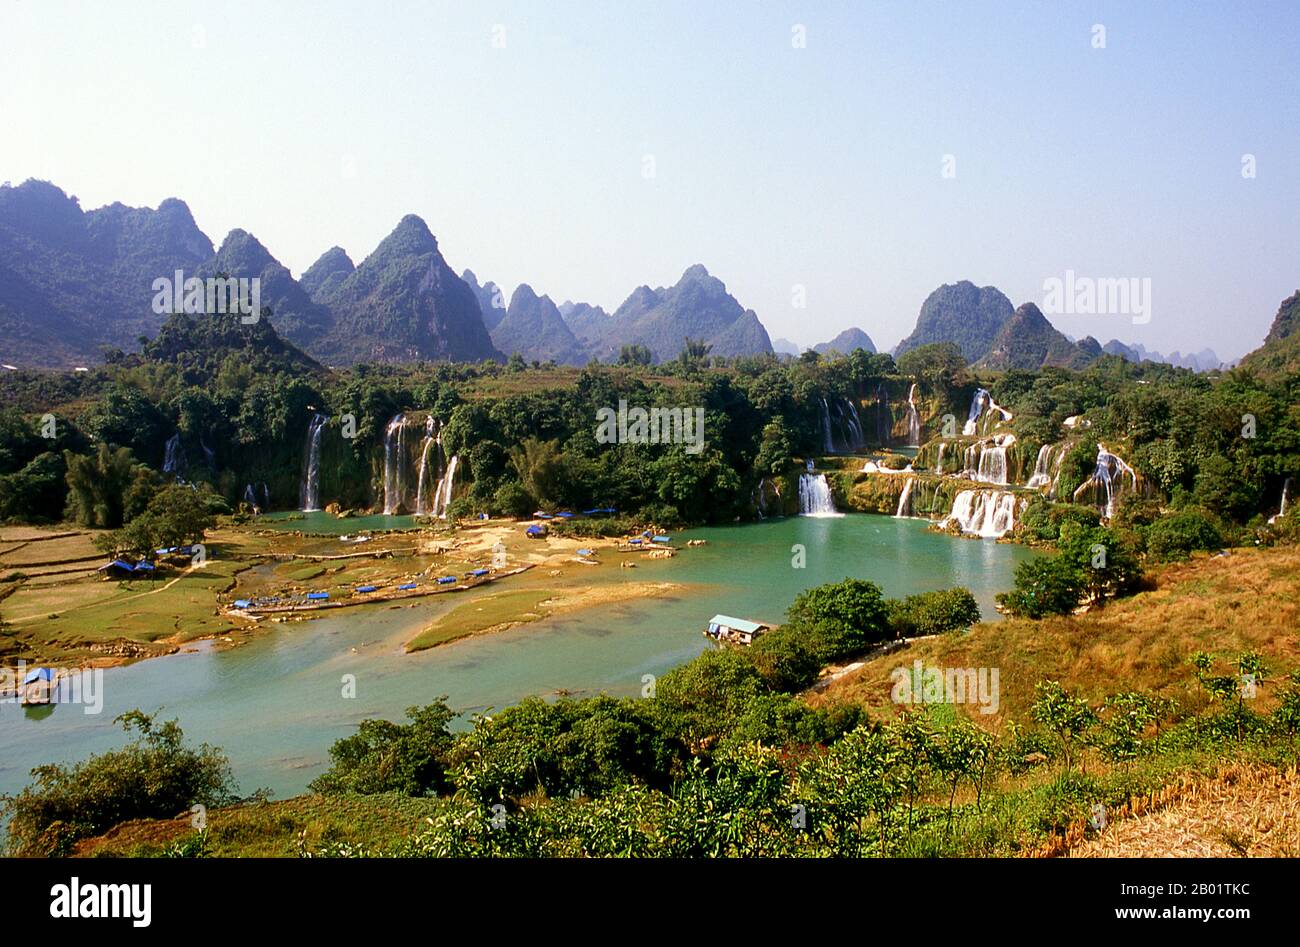 China/Vietnam: Verbot Gioc oder Detian Falls an der vietnamesisch-chinesischen Grenze, Provinz Guangxi (China) und Provinz Cao Bang (Vietnam). Ban Gioc - Detian Falls (vietnamesisch Thác Bản Giốc & Thác Đức Thiên) sind zwei Wasserfälle am Fluss Quây Sơn oder Guichun, die an der chinesisch-vietnamesischen Grenze liegen und sich in den Karsthügeln des Komitats Daxin in der Provinz Guangxi auf chinesischer Seite befinden. und im Bezirk Trung Khanh, Provinz Cao Bằng auf vietnamesischer Seite, 272 km nördlich von Hanoi. Stockfoto